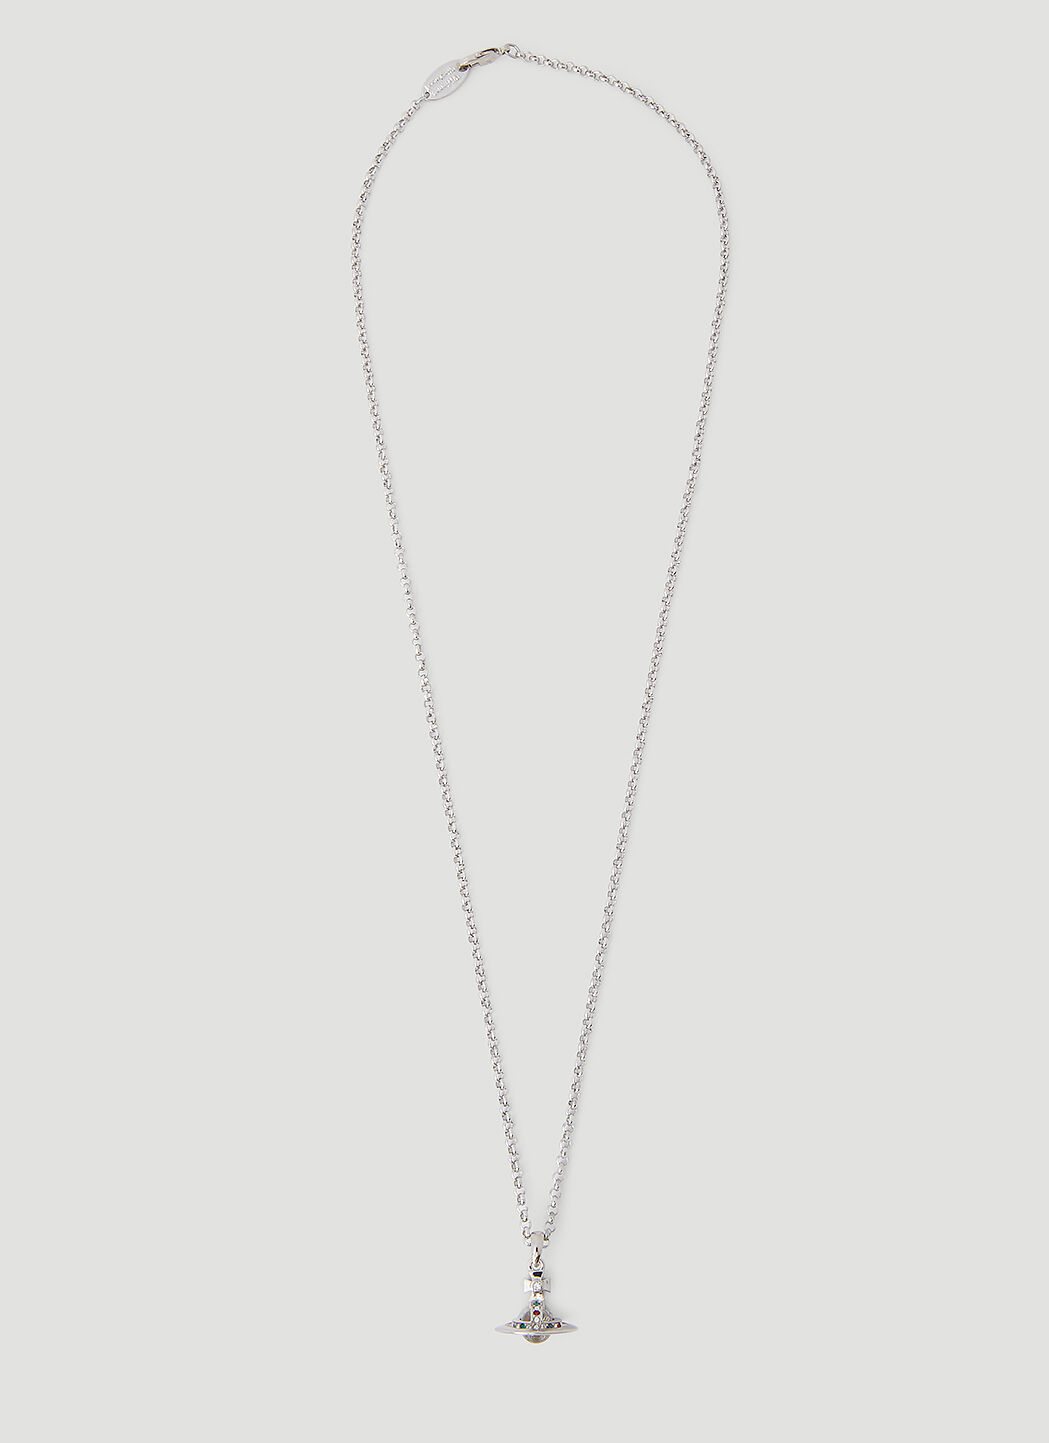 Vivienne Westwood Men's Petite Orb Necklace in Silver | LN-CC®